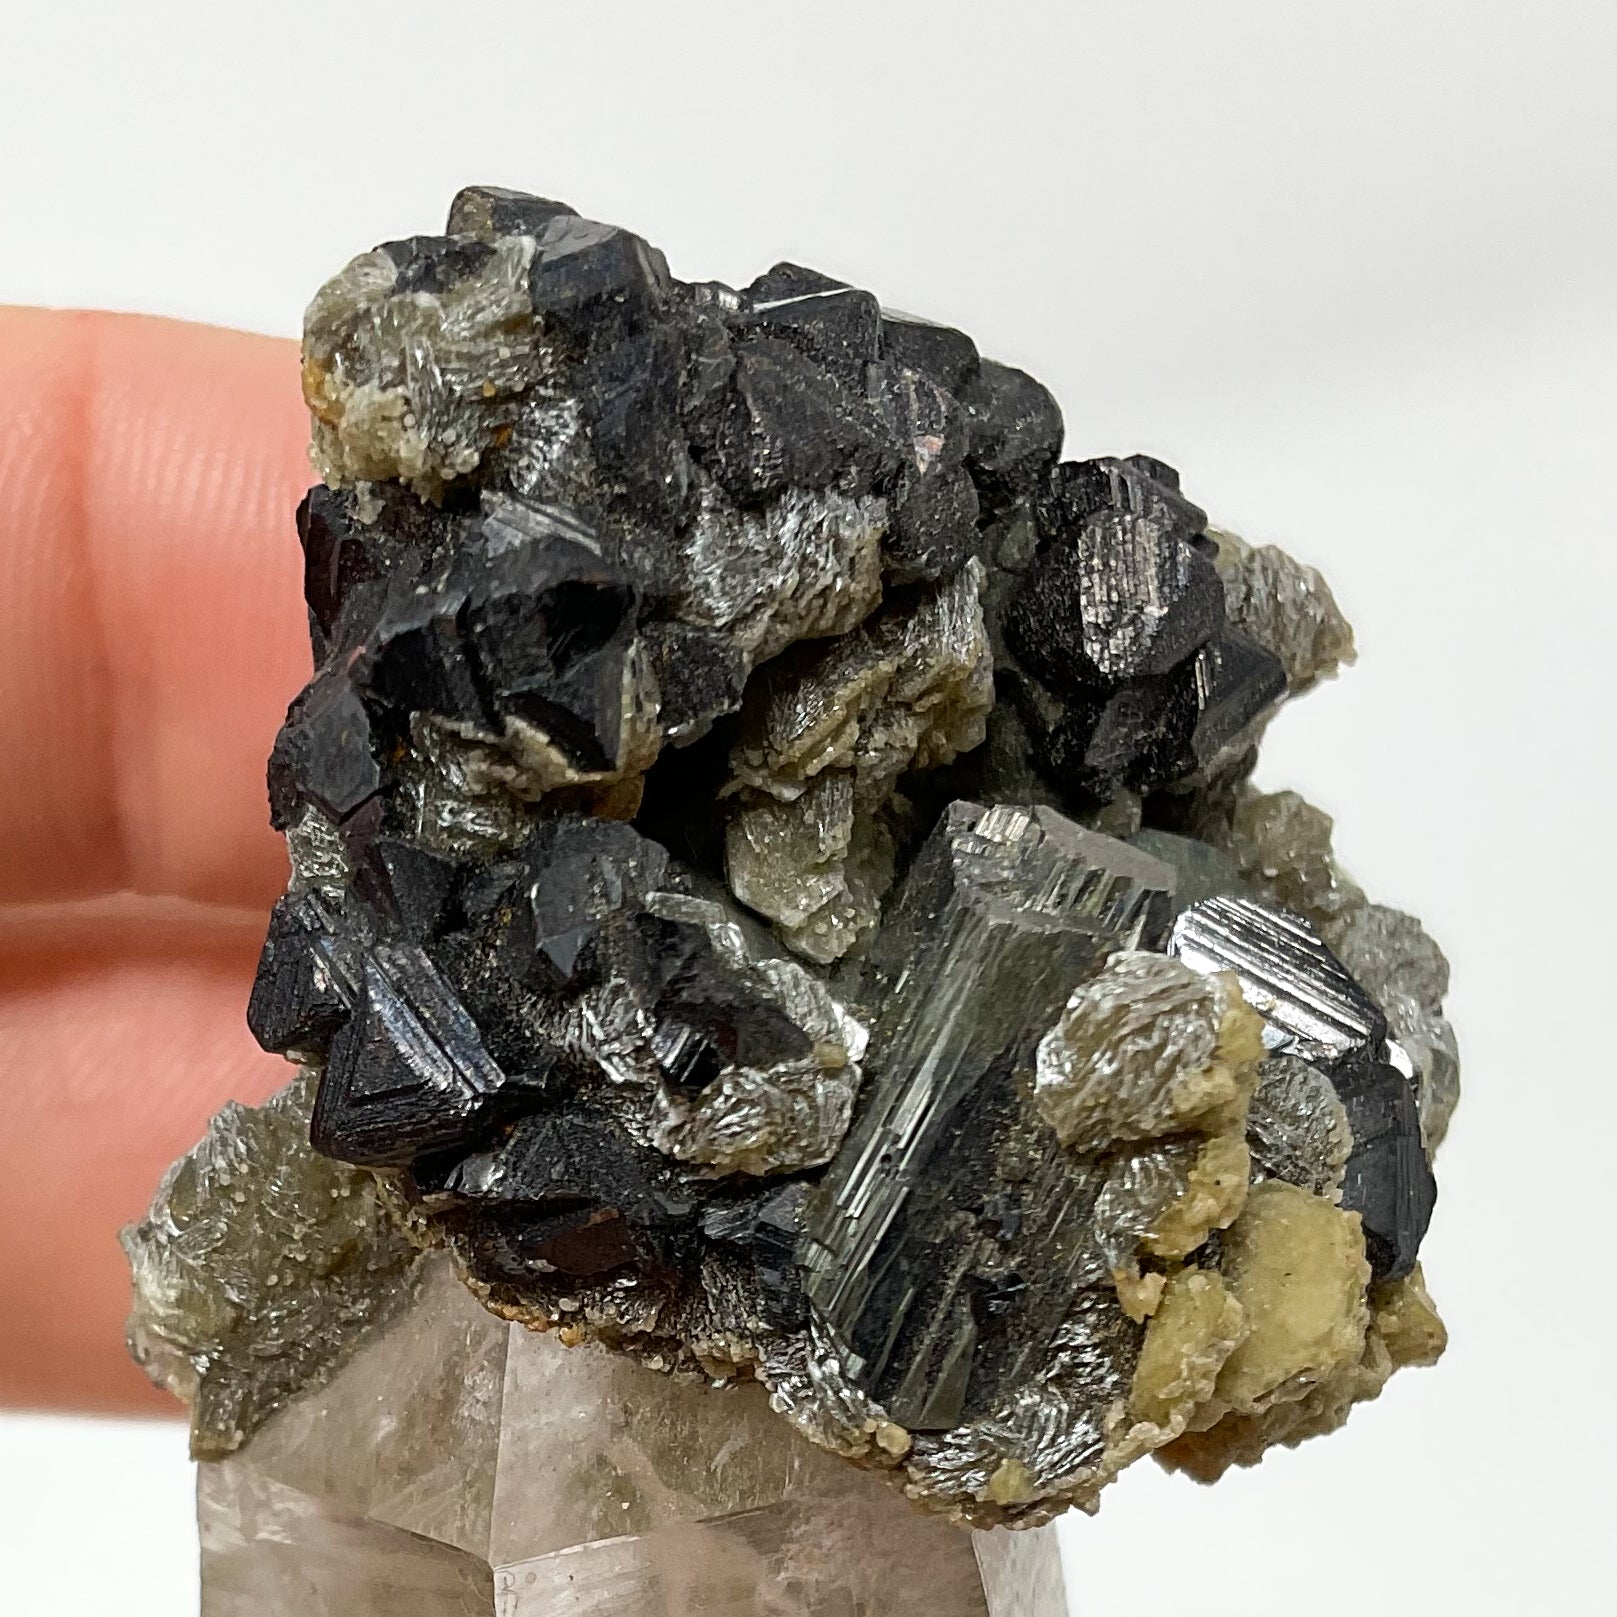 Cassiterite on Quartz from Panesqueira, Portugal